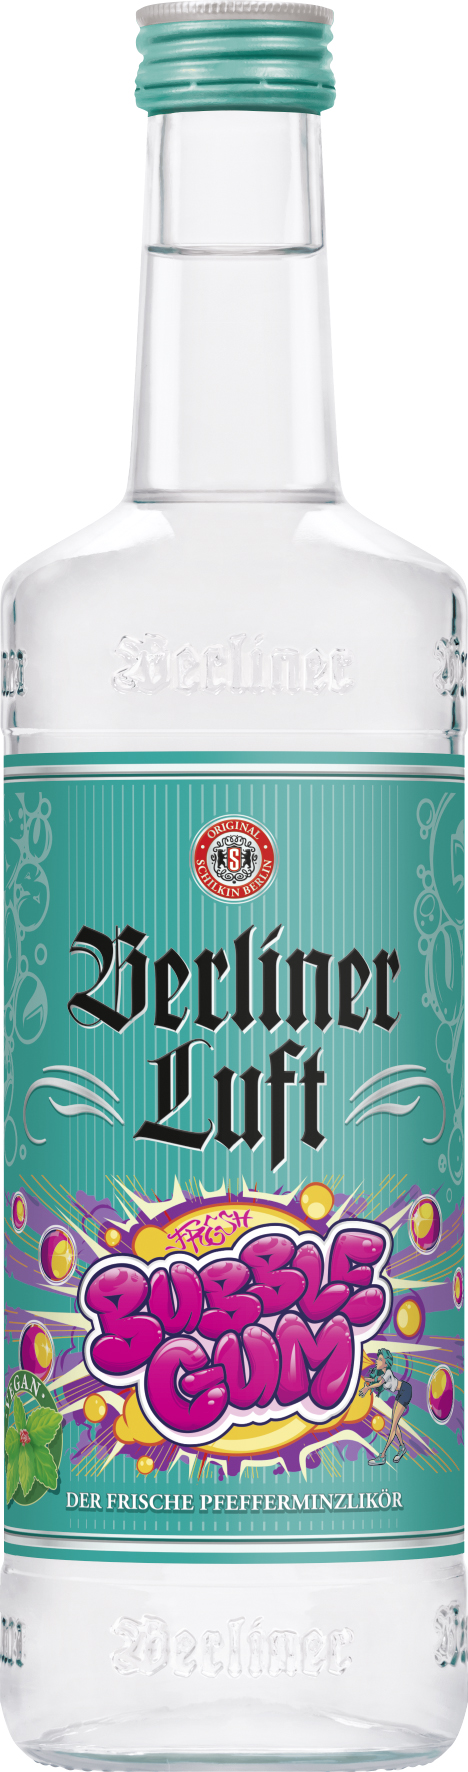 Berliner Luft - Bubble Gum - 0,7l 18%vol.